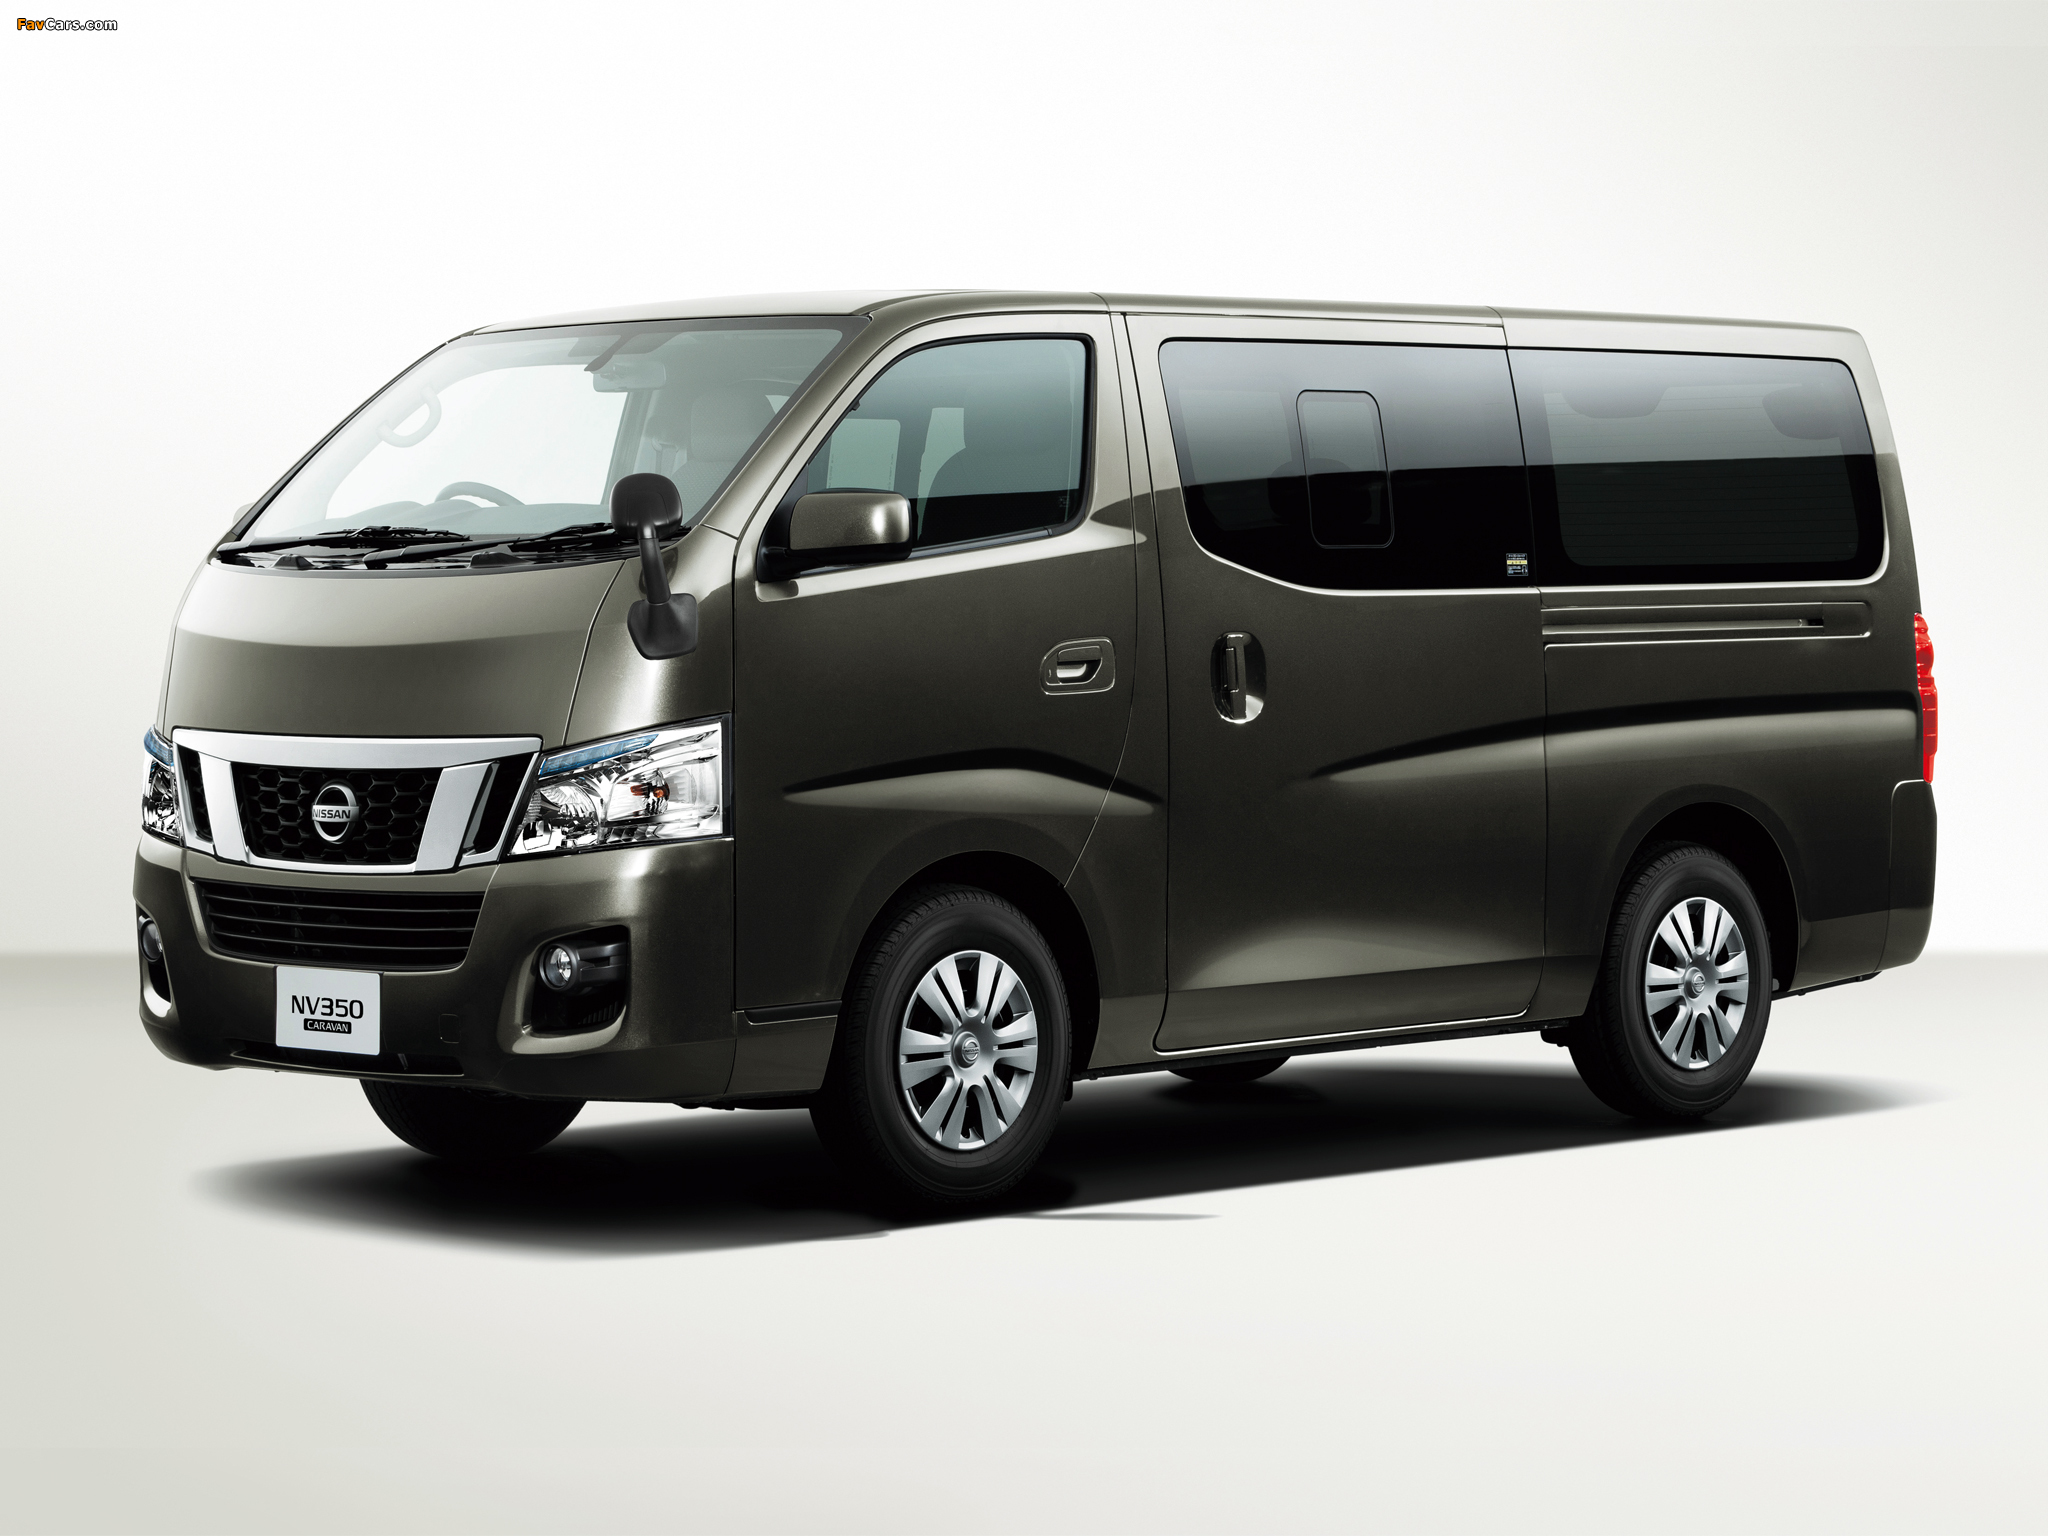 Nissan NV350 Caravan Premium GX (E26) 2012 images (2048 x 1536)